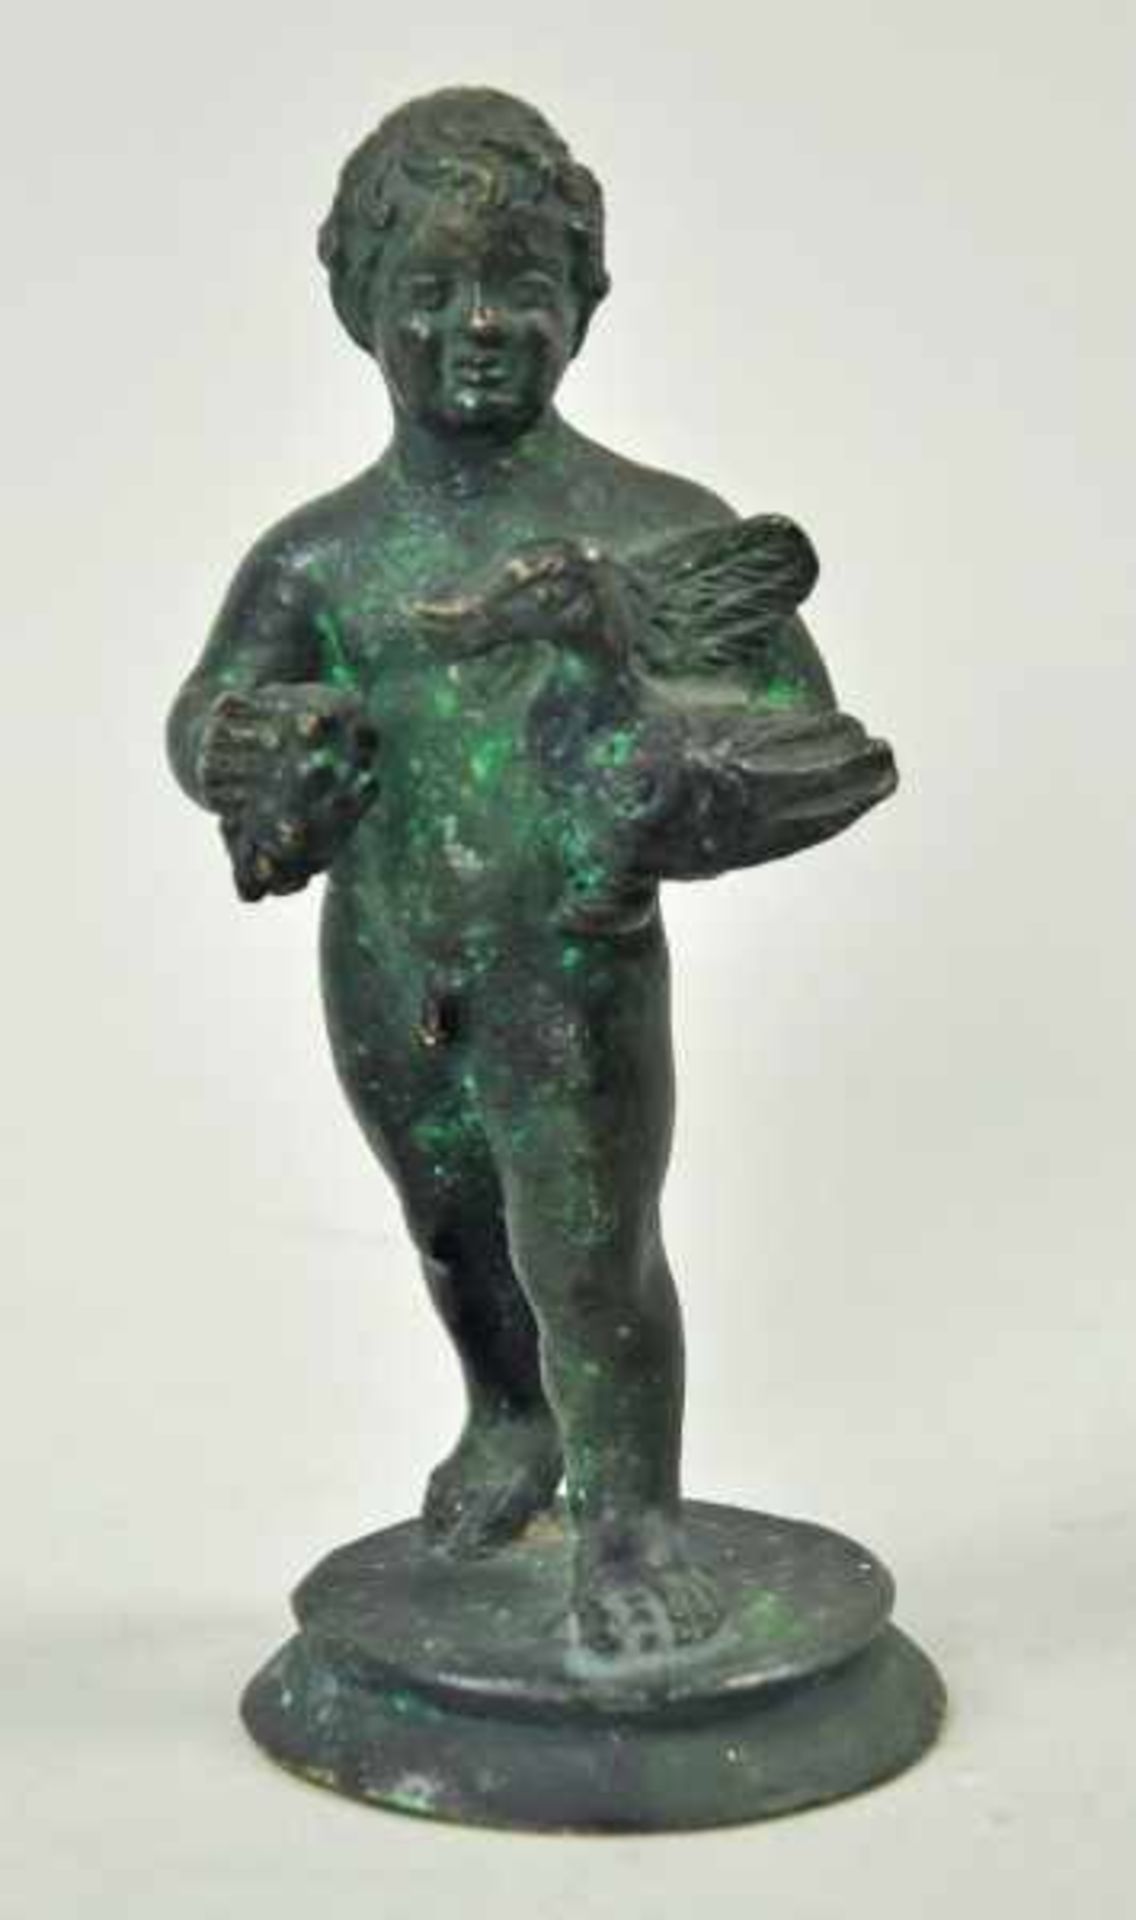 JUNGE mit Gans u. Trauben in der Hand, auf runder Basis, Bronze grün patiniert, H 12,5cm- - -23.00 %